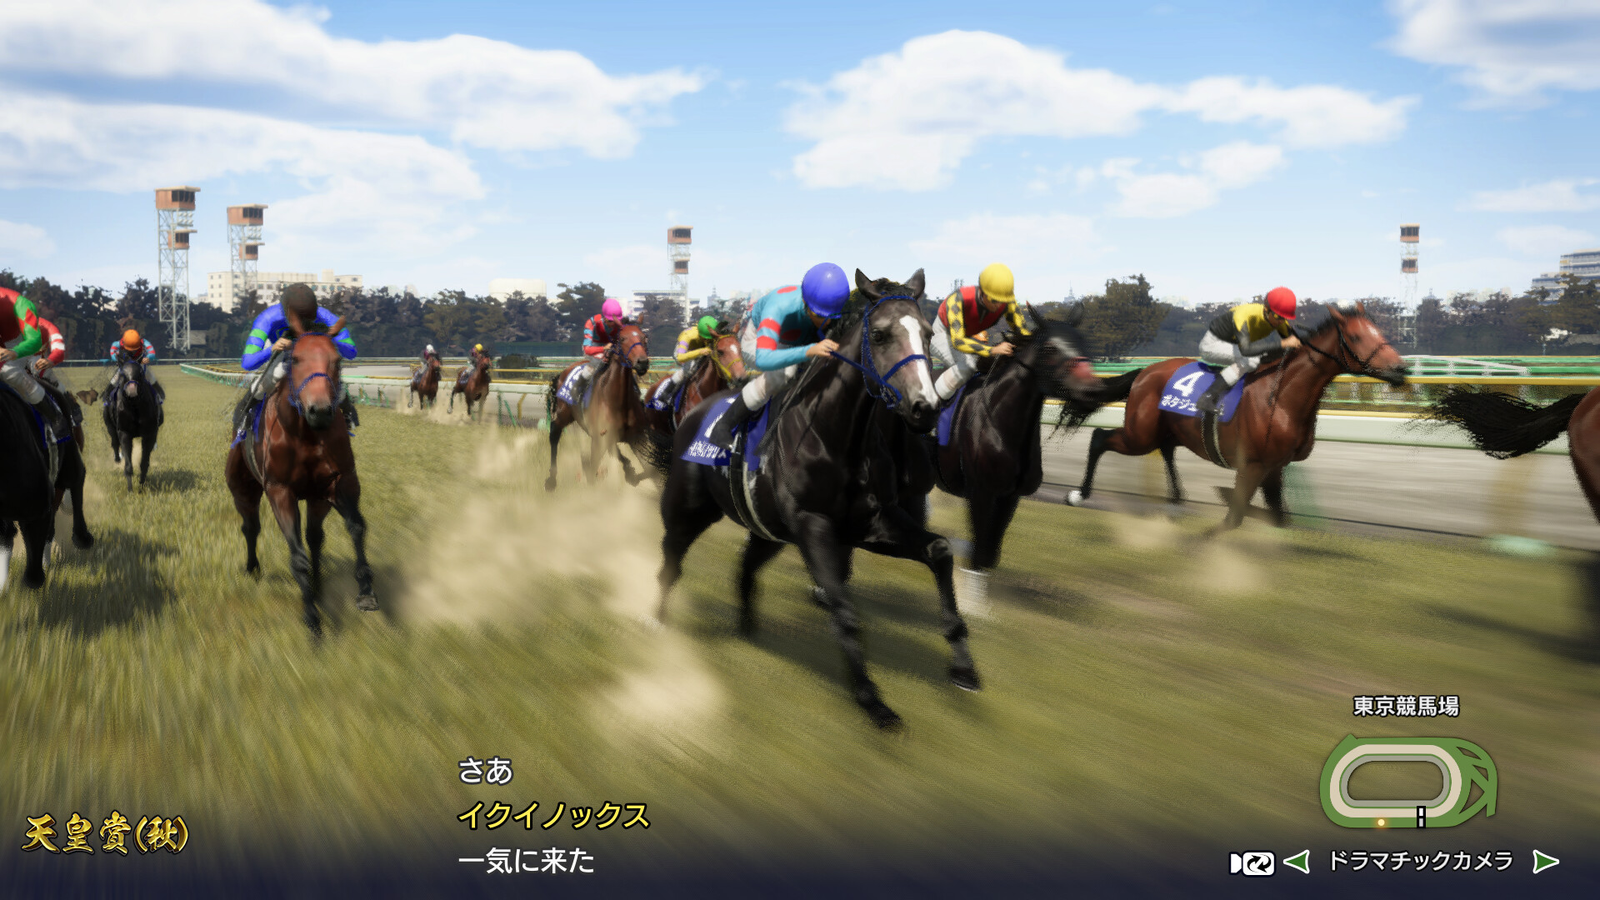 A Koei Tecmo dos ninjas e cavalos de corridas - o bizarro Japão